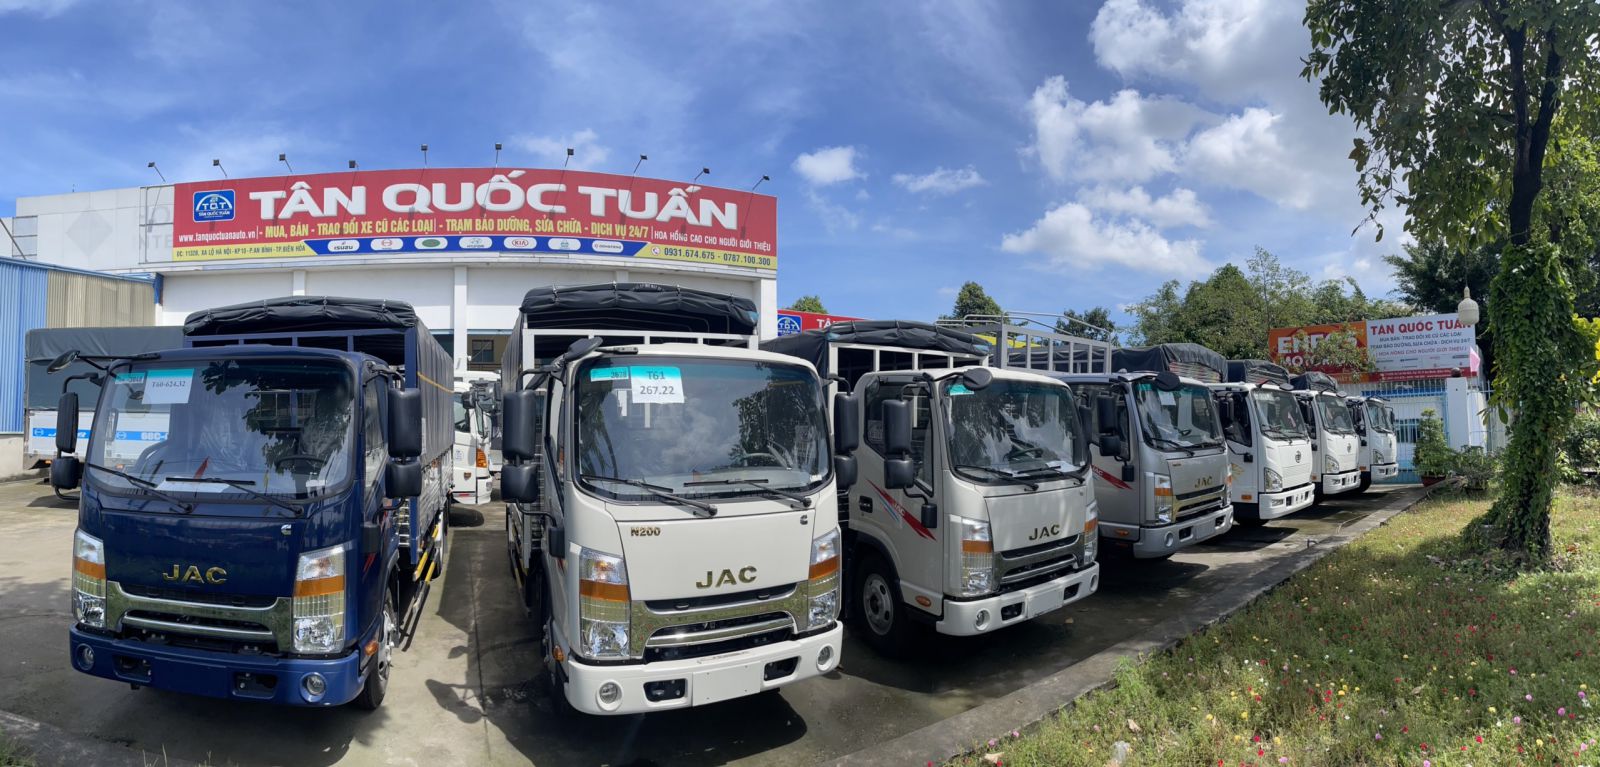 Dịch vụ xe tải chở hàng Biên Hòa Đồng Nai giá rẻ  Chuyển Nhà Sài Gòn 24H